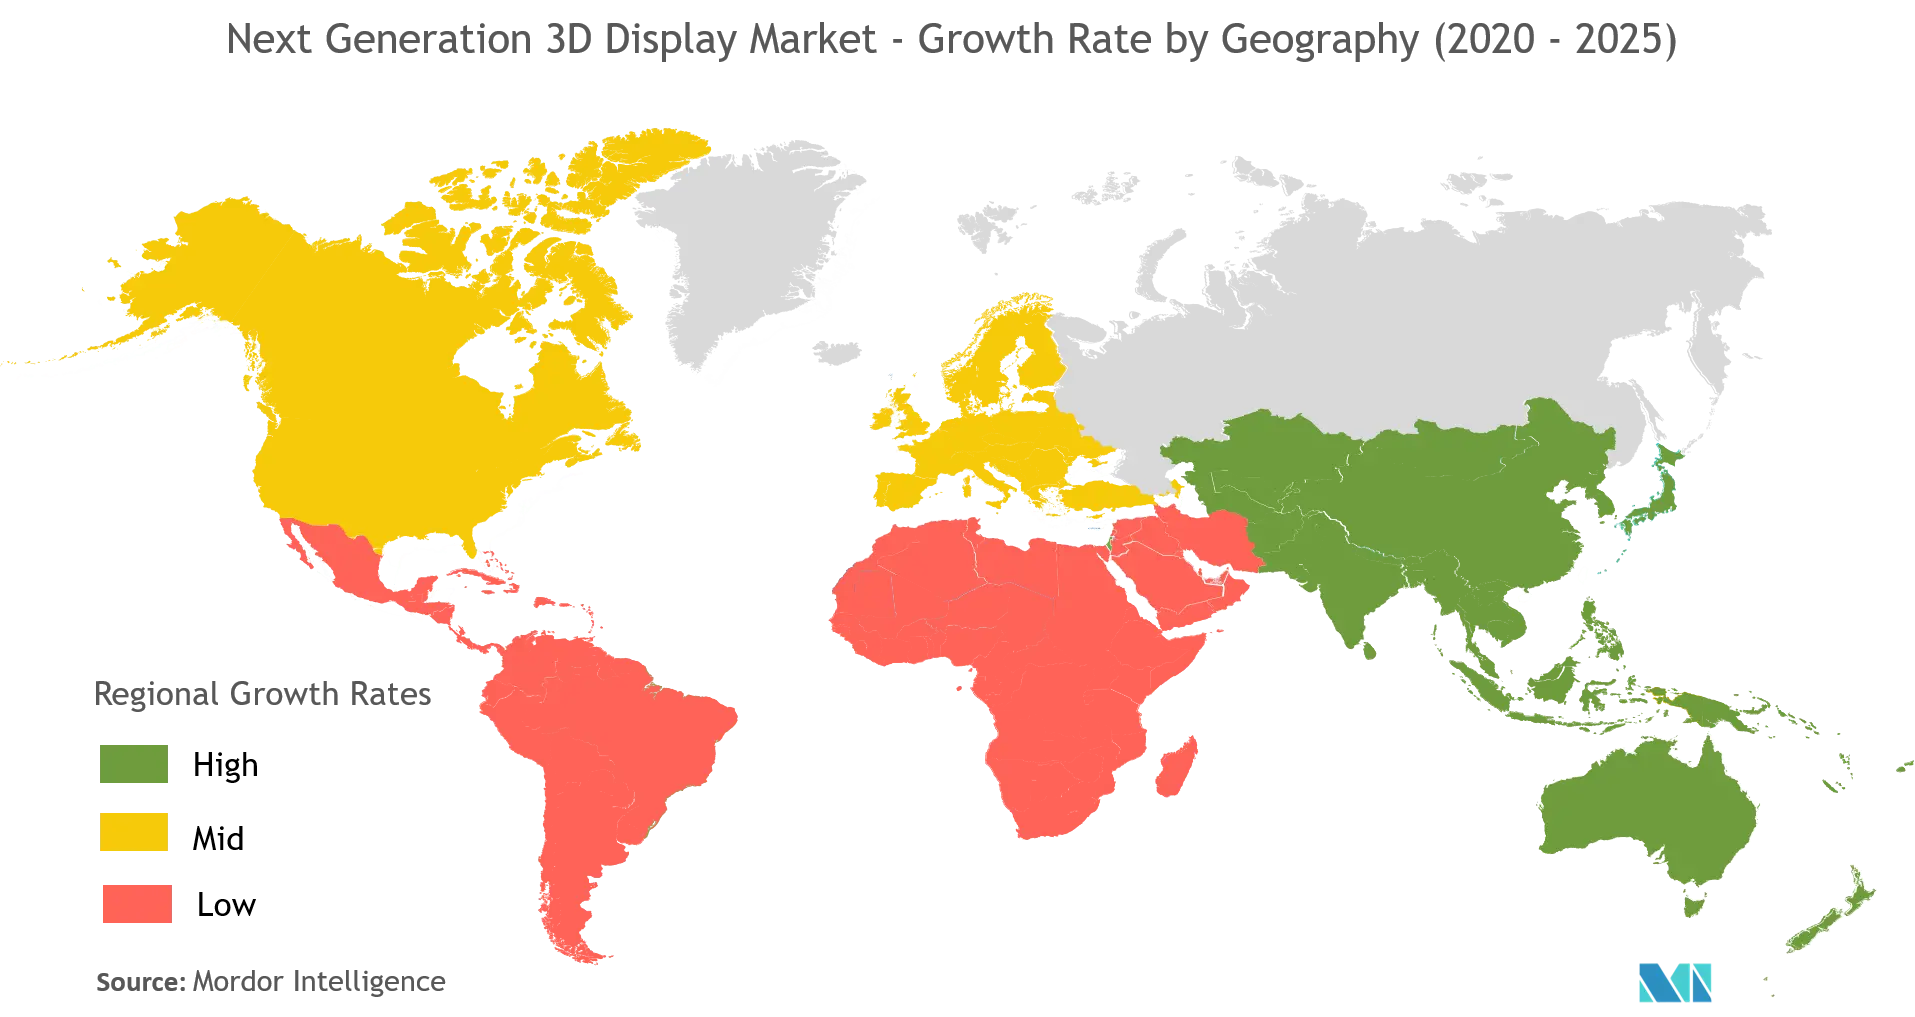 Markt für 3D-Displays der nächsten Generation - Wachstumsrate nach Regionen (2020 - 2025)